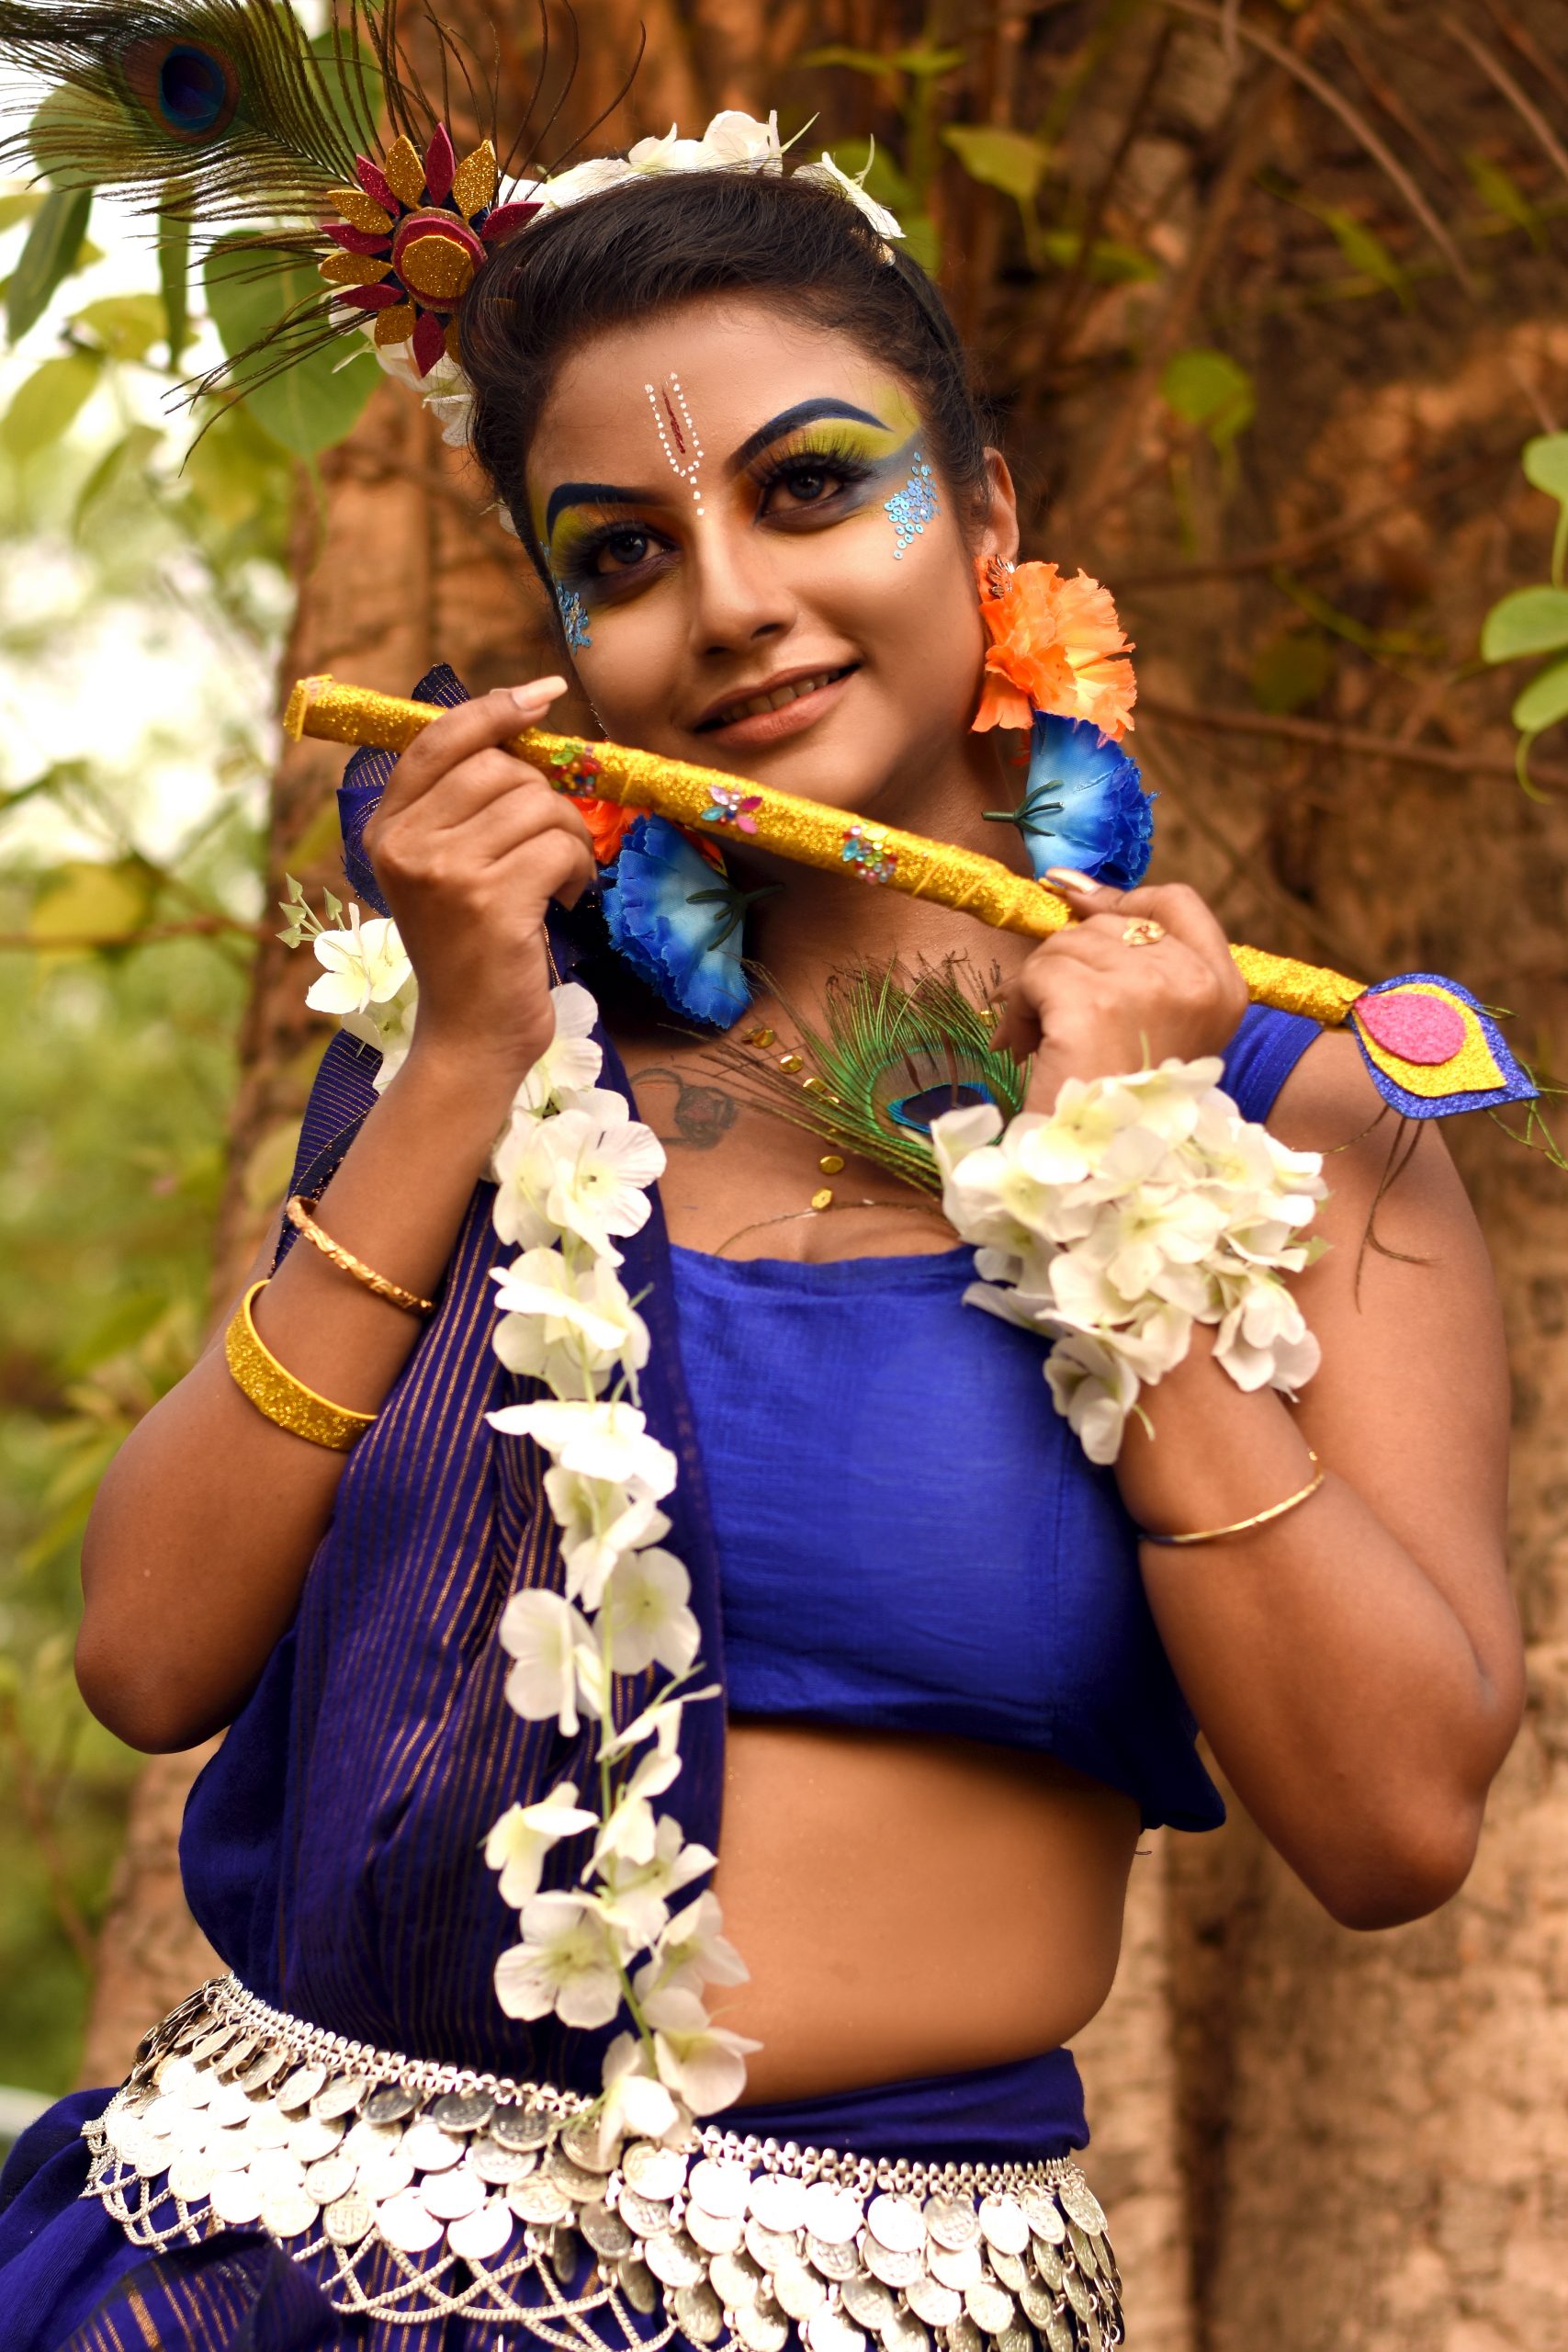 A girl in Lord Krishna getup